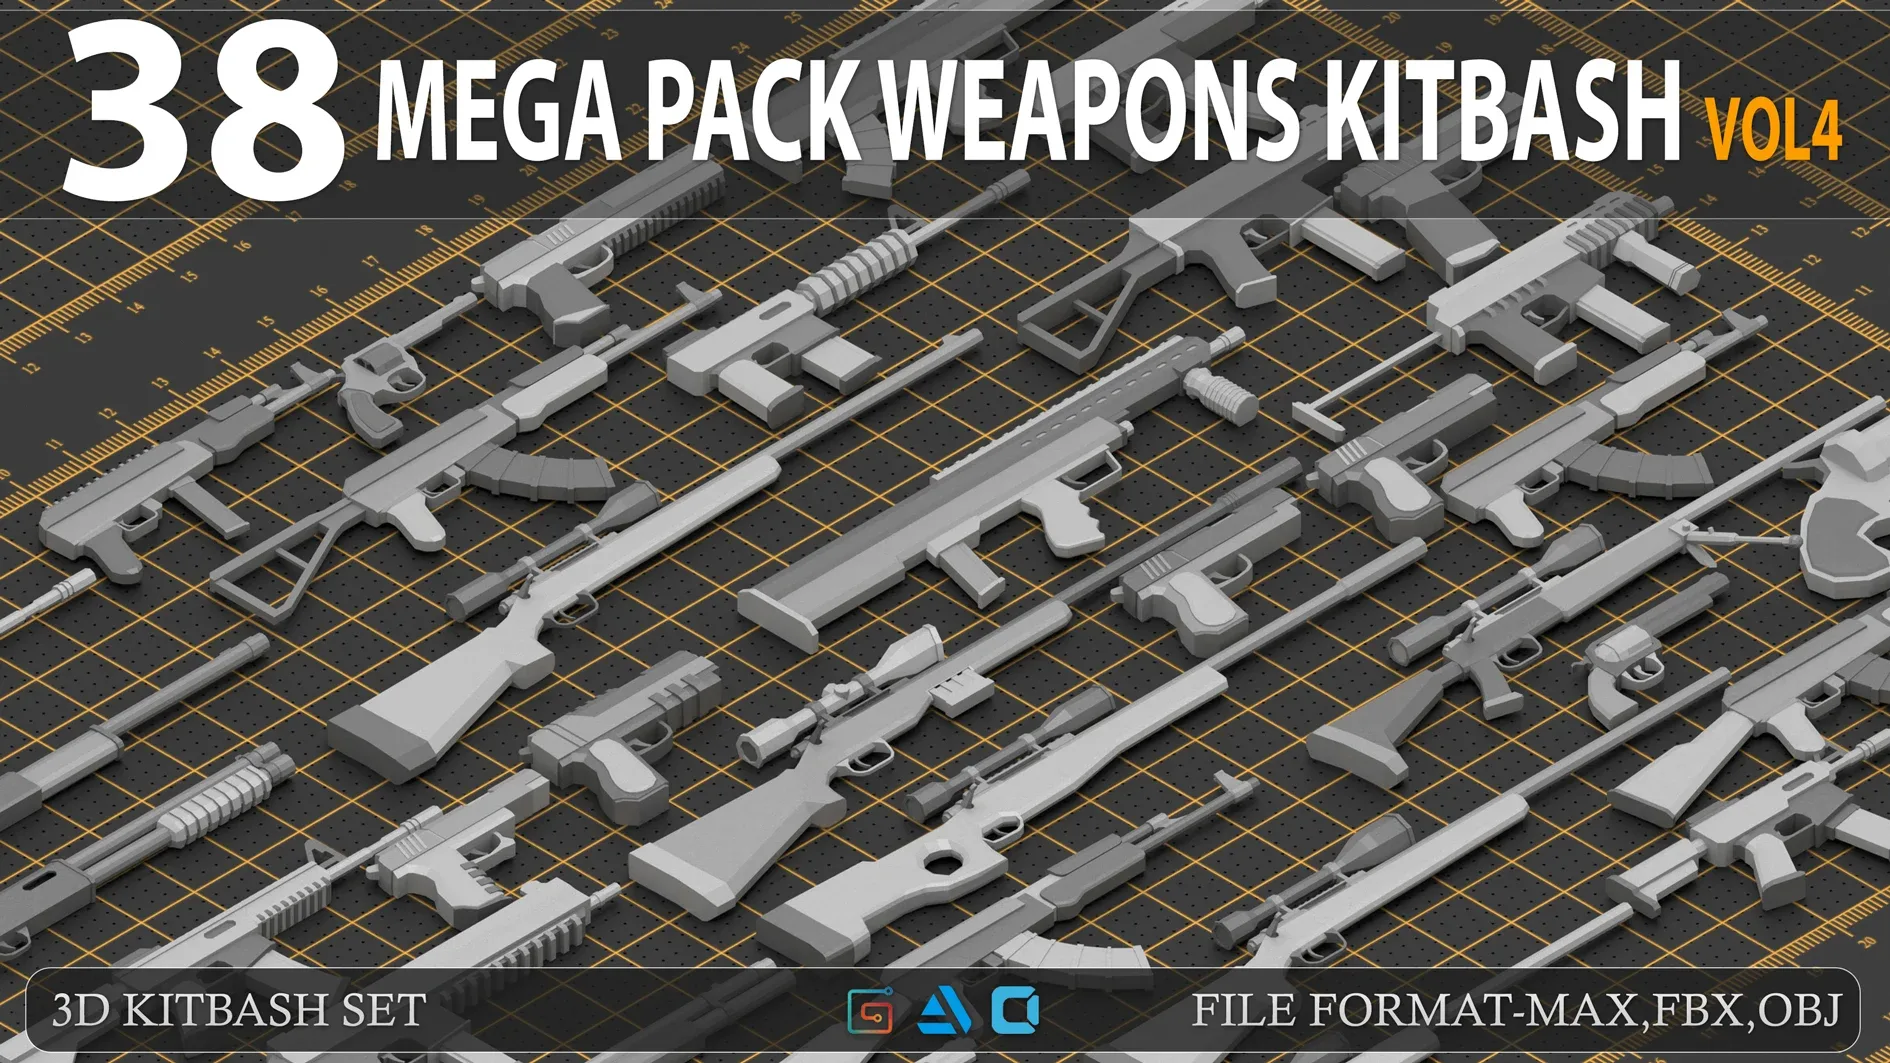 Mega pack weapon kitbash|vol4